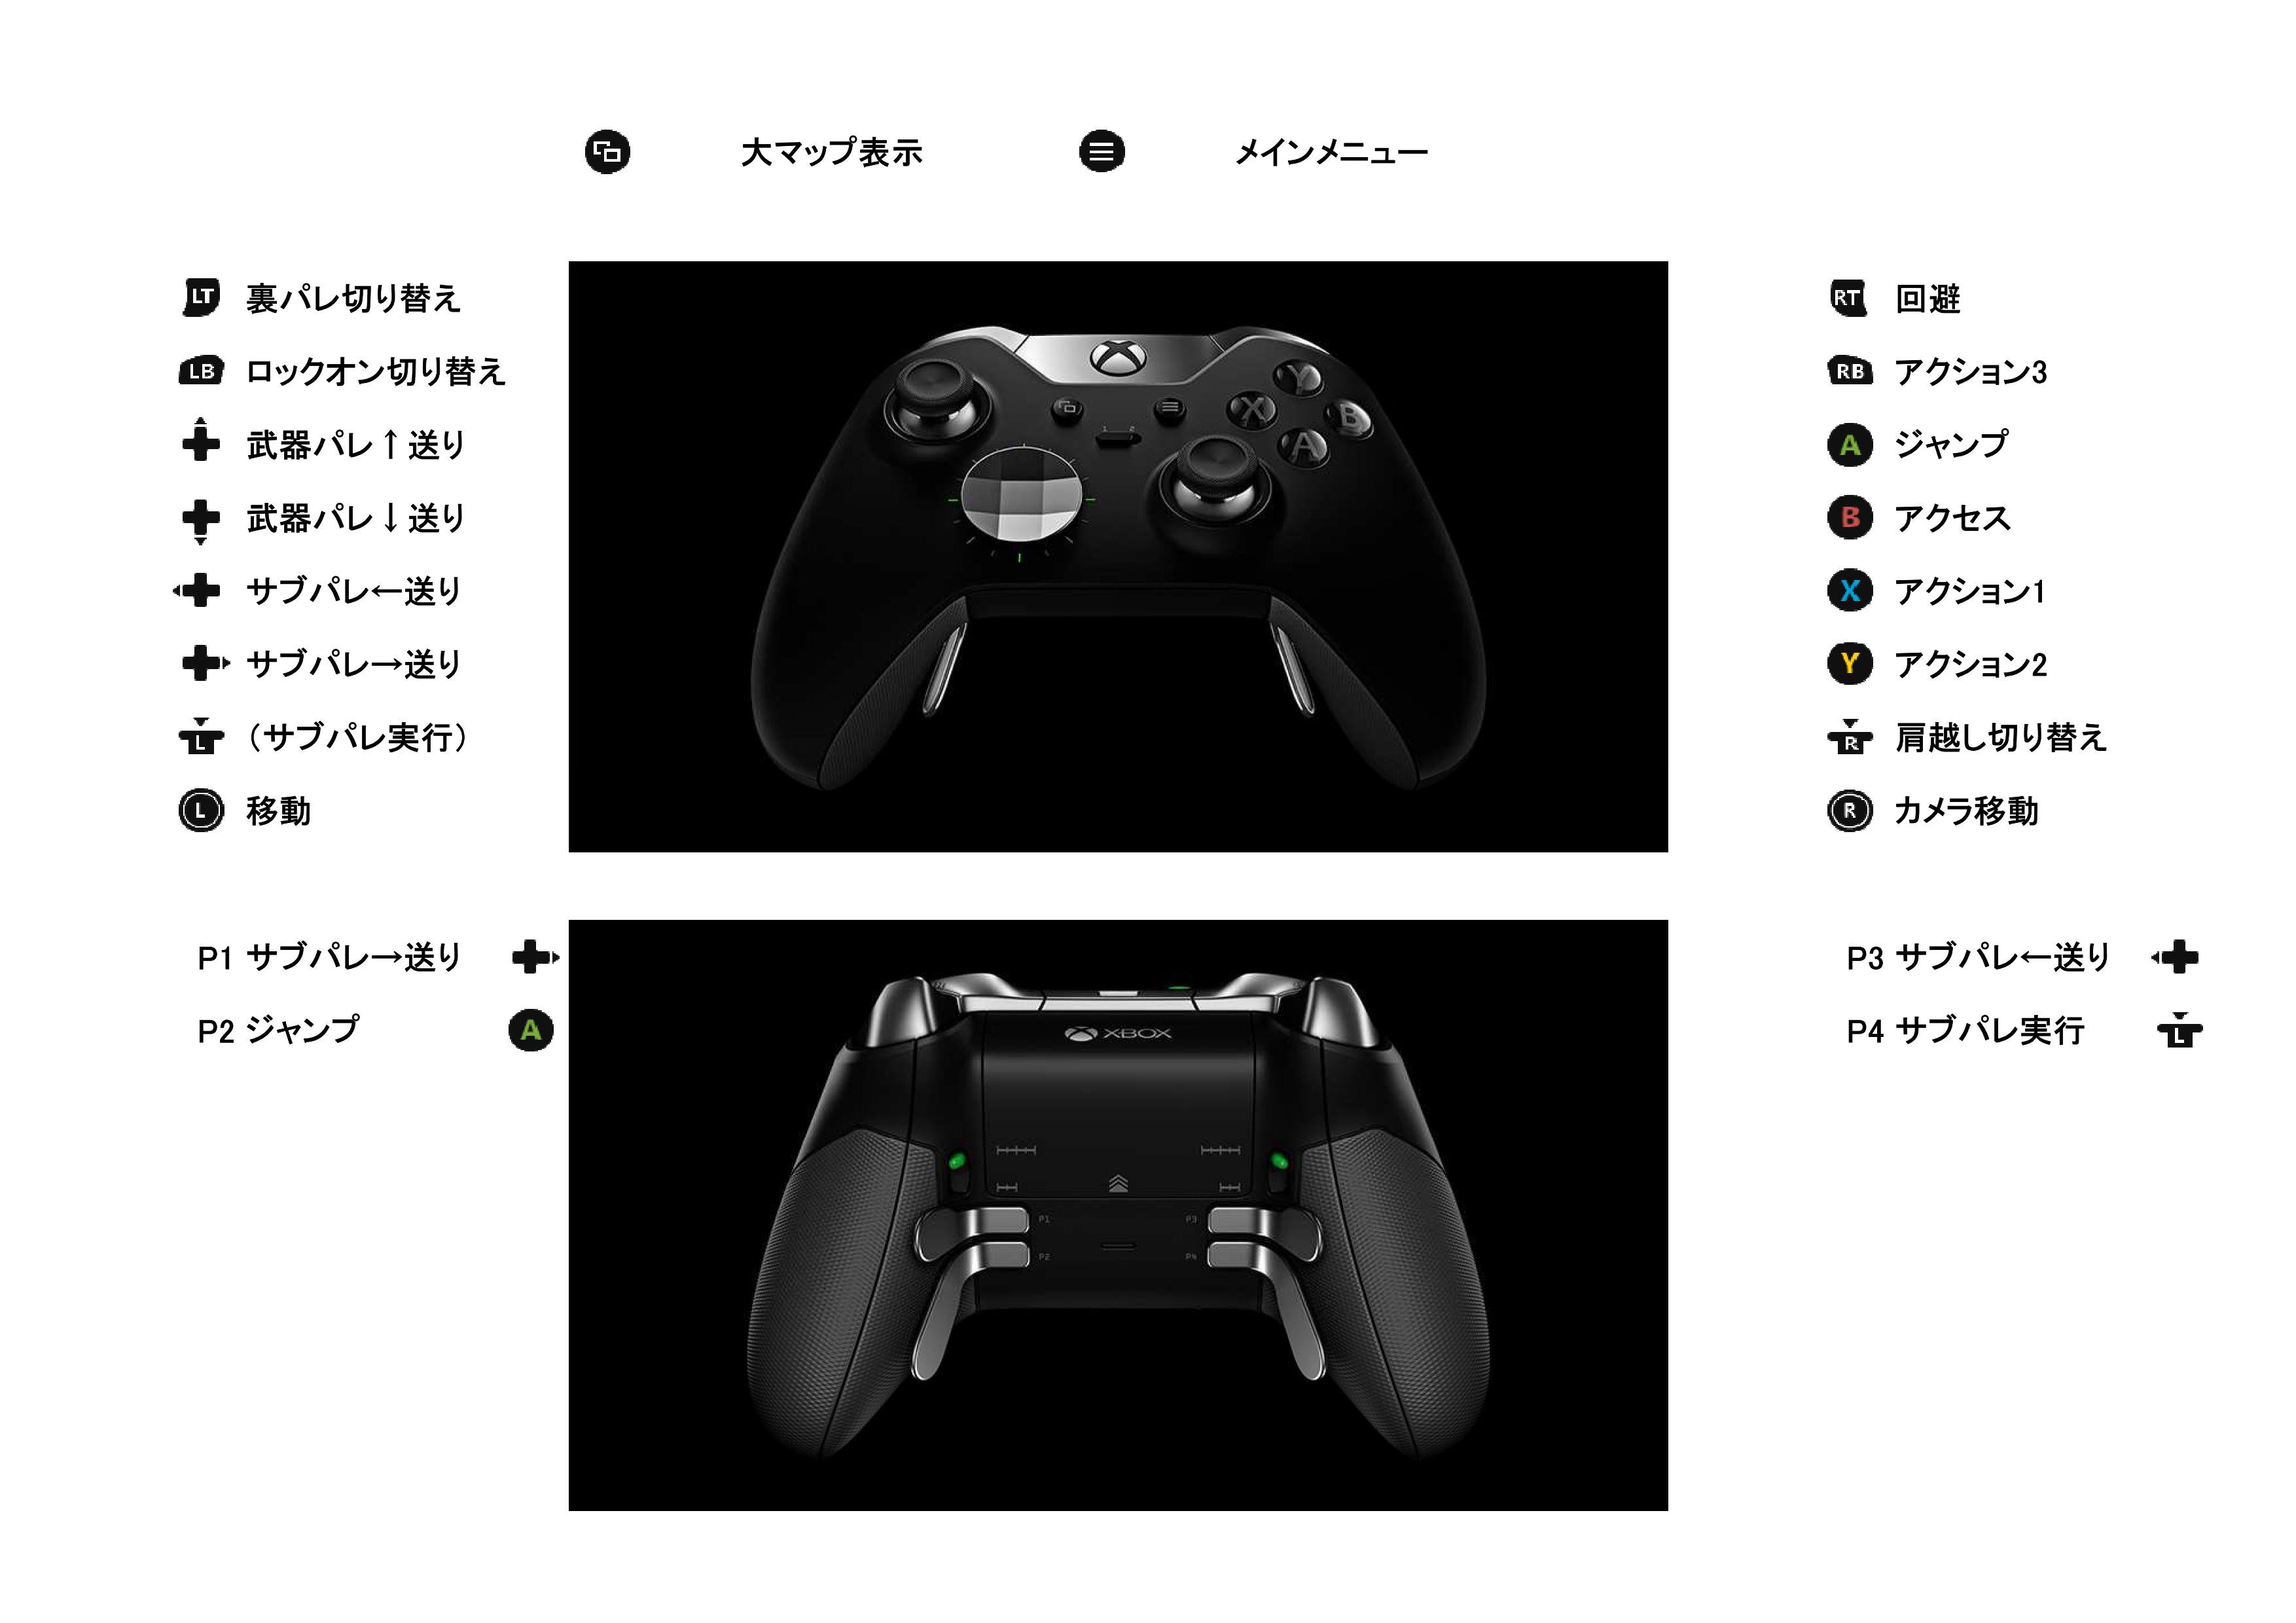 フォル モーント tag Pso2 Samurai No Koku Xbox One Elite コントローラー Chatpad てな形で3ボタン サブパレは基本裏パドルで選択 実行 方向キーは使わない 武器パレはショトカワードをキーボード上数字キーで実行 Chatpadの数字から実行